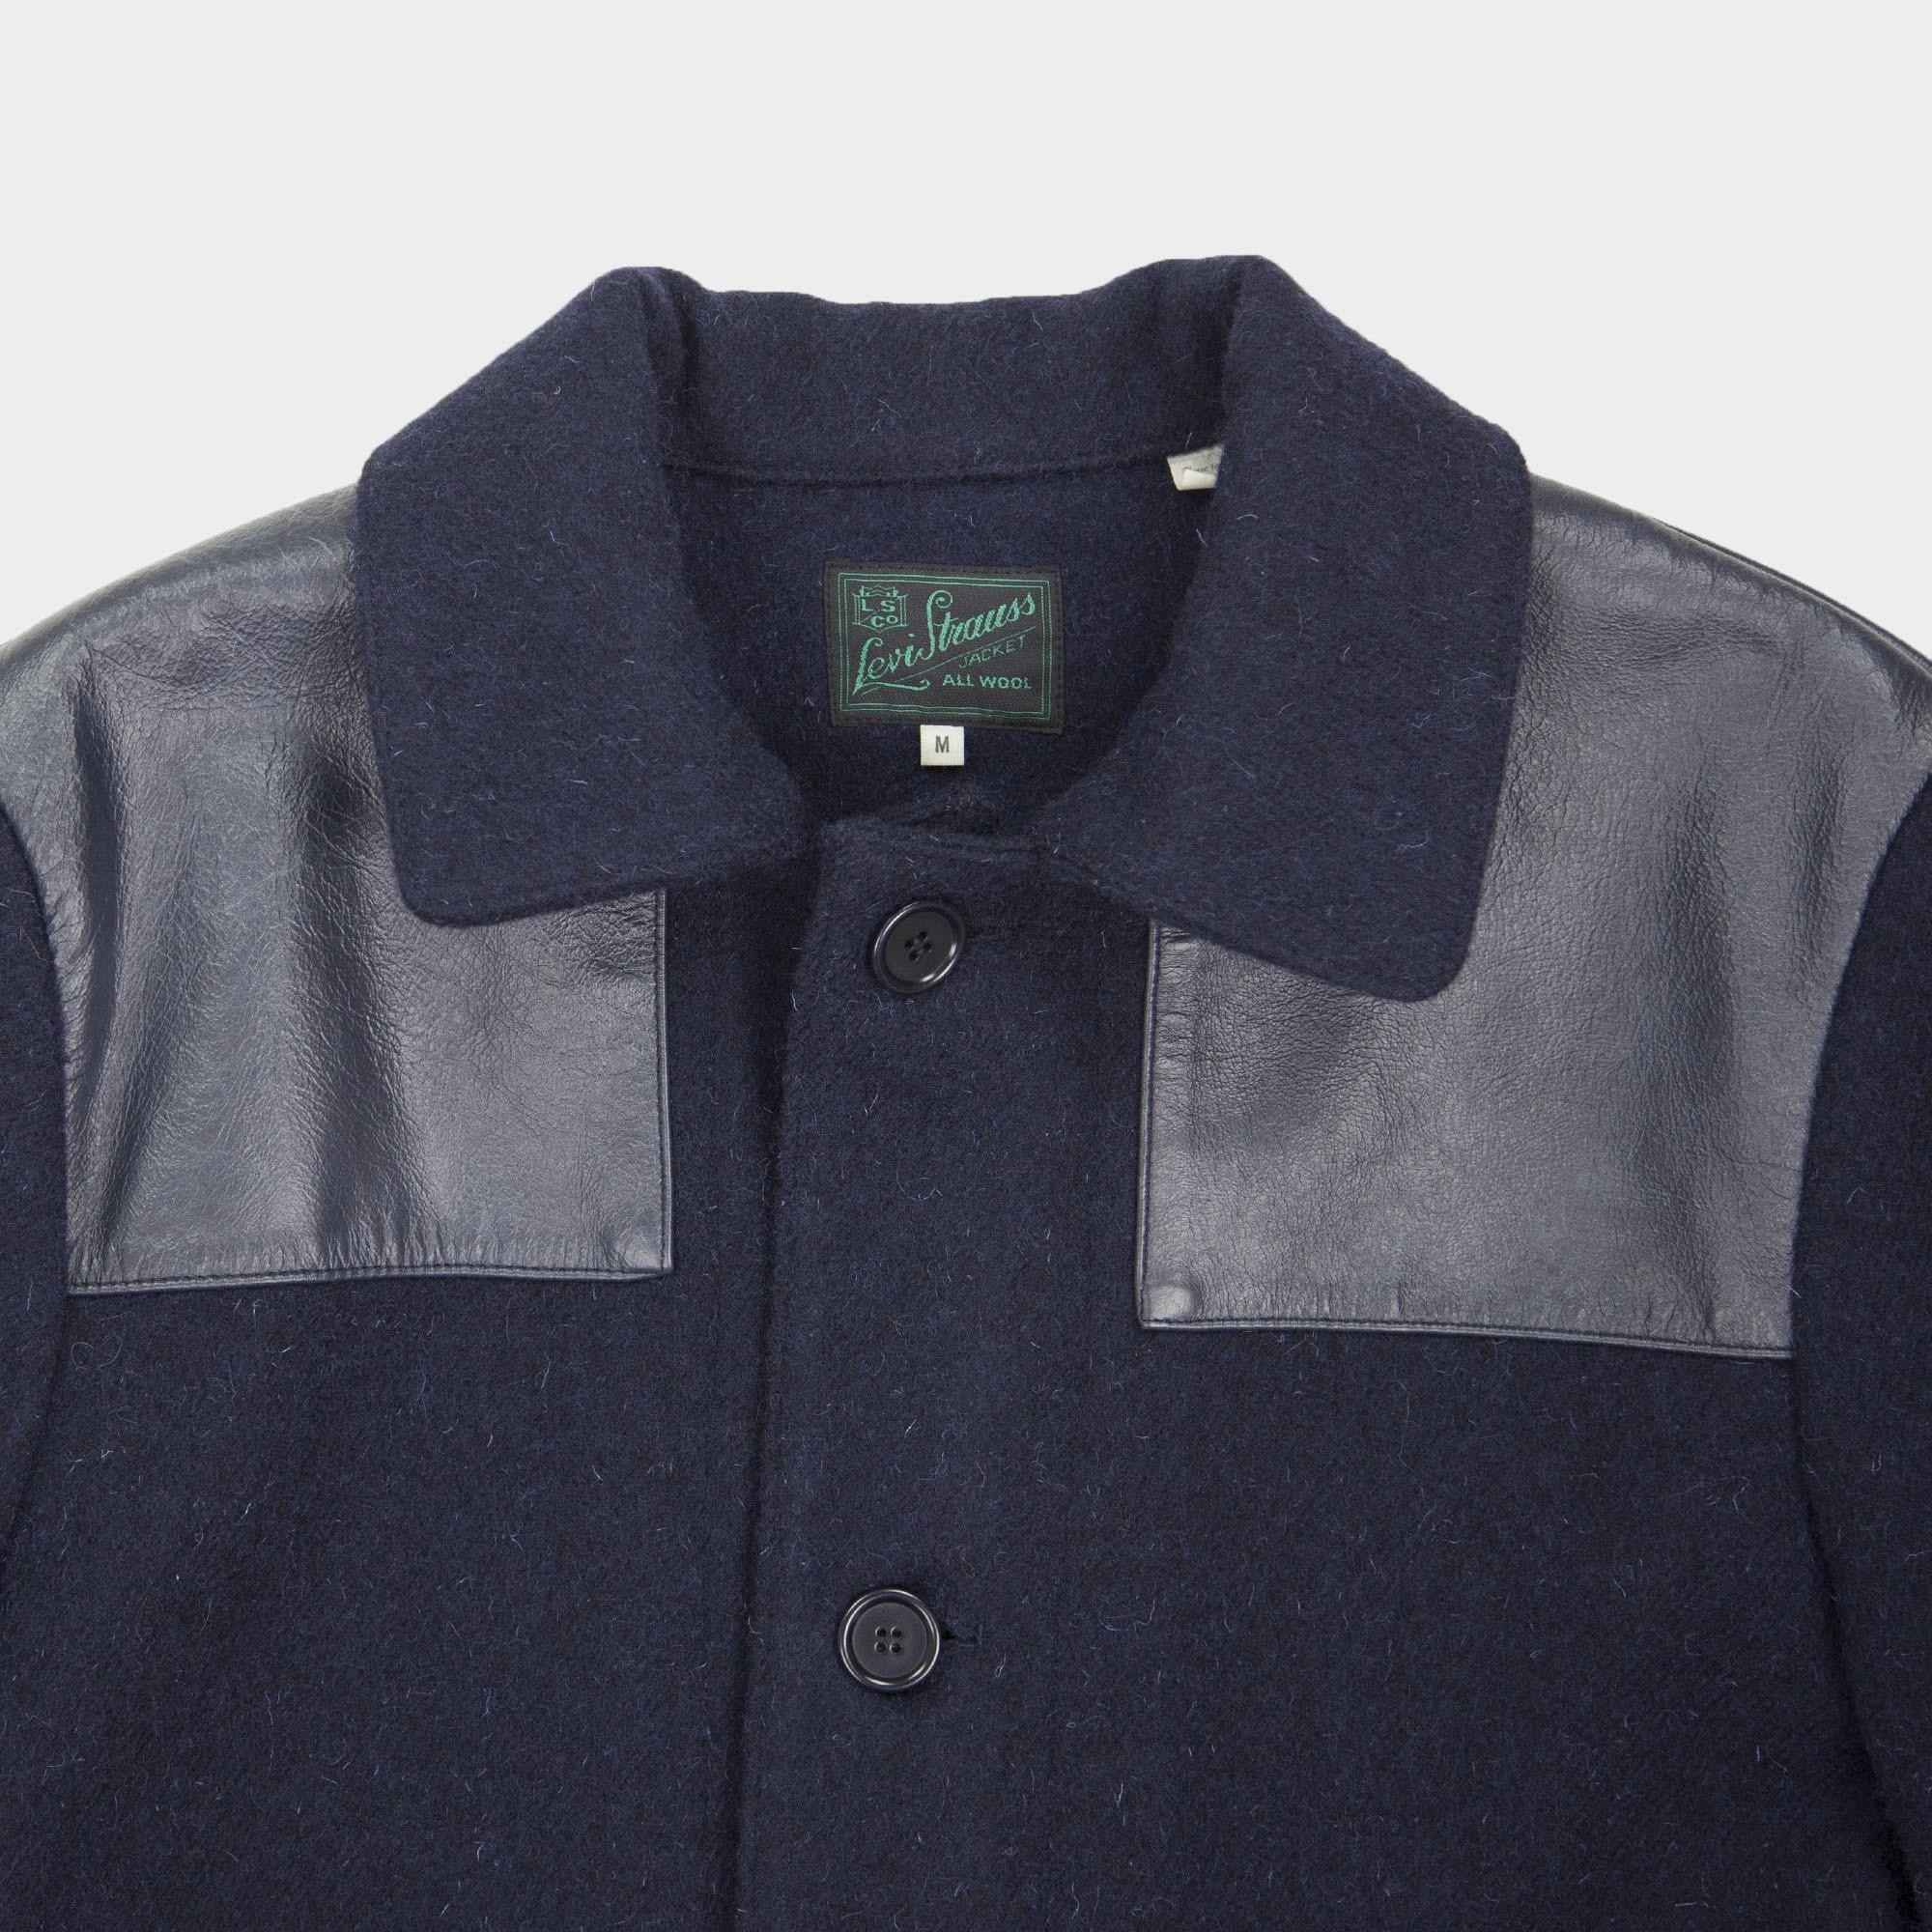 Levi's Vintage Clothing (LVC) Donkey Jacket Navy (LARGE) Swap or Sell |  Styleforum